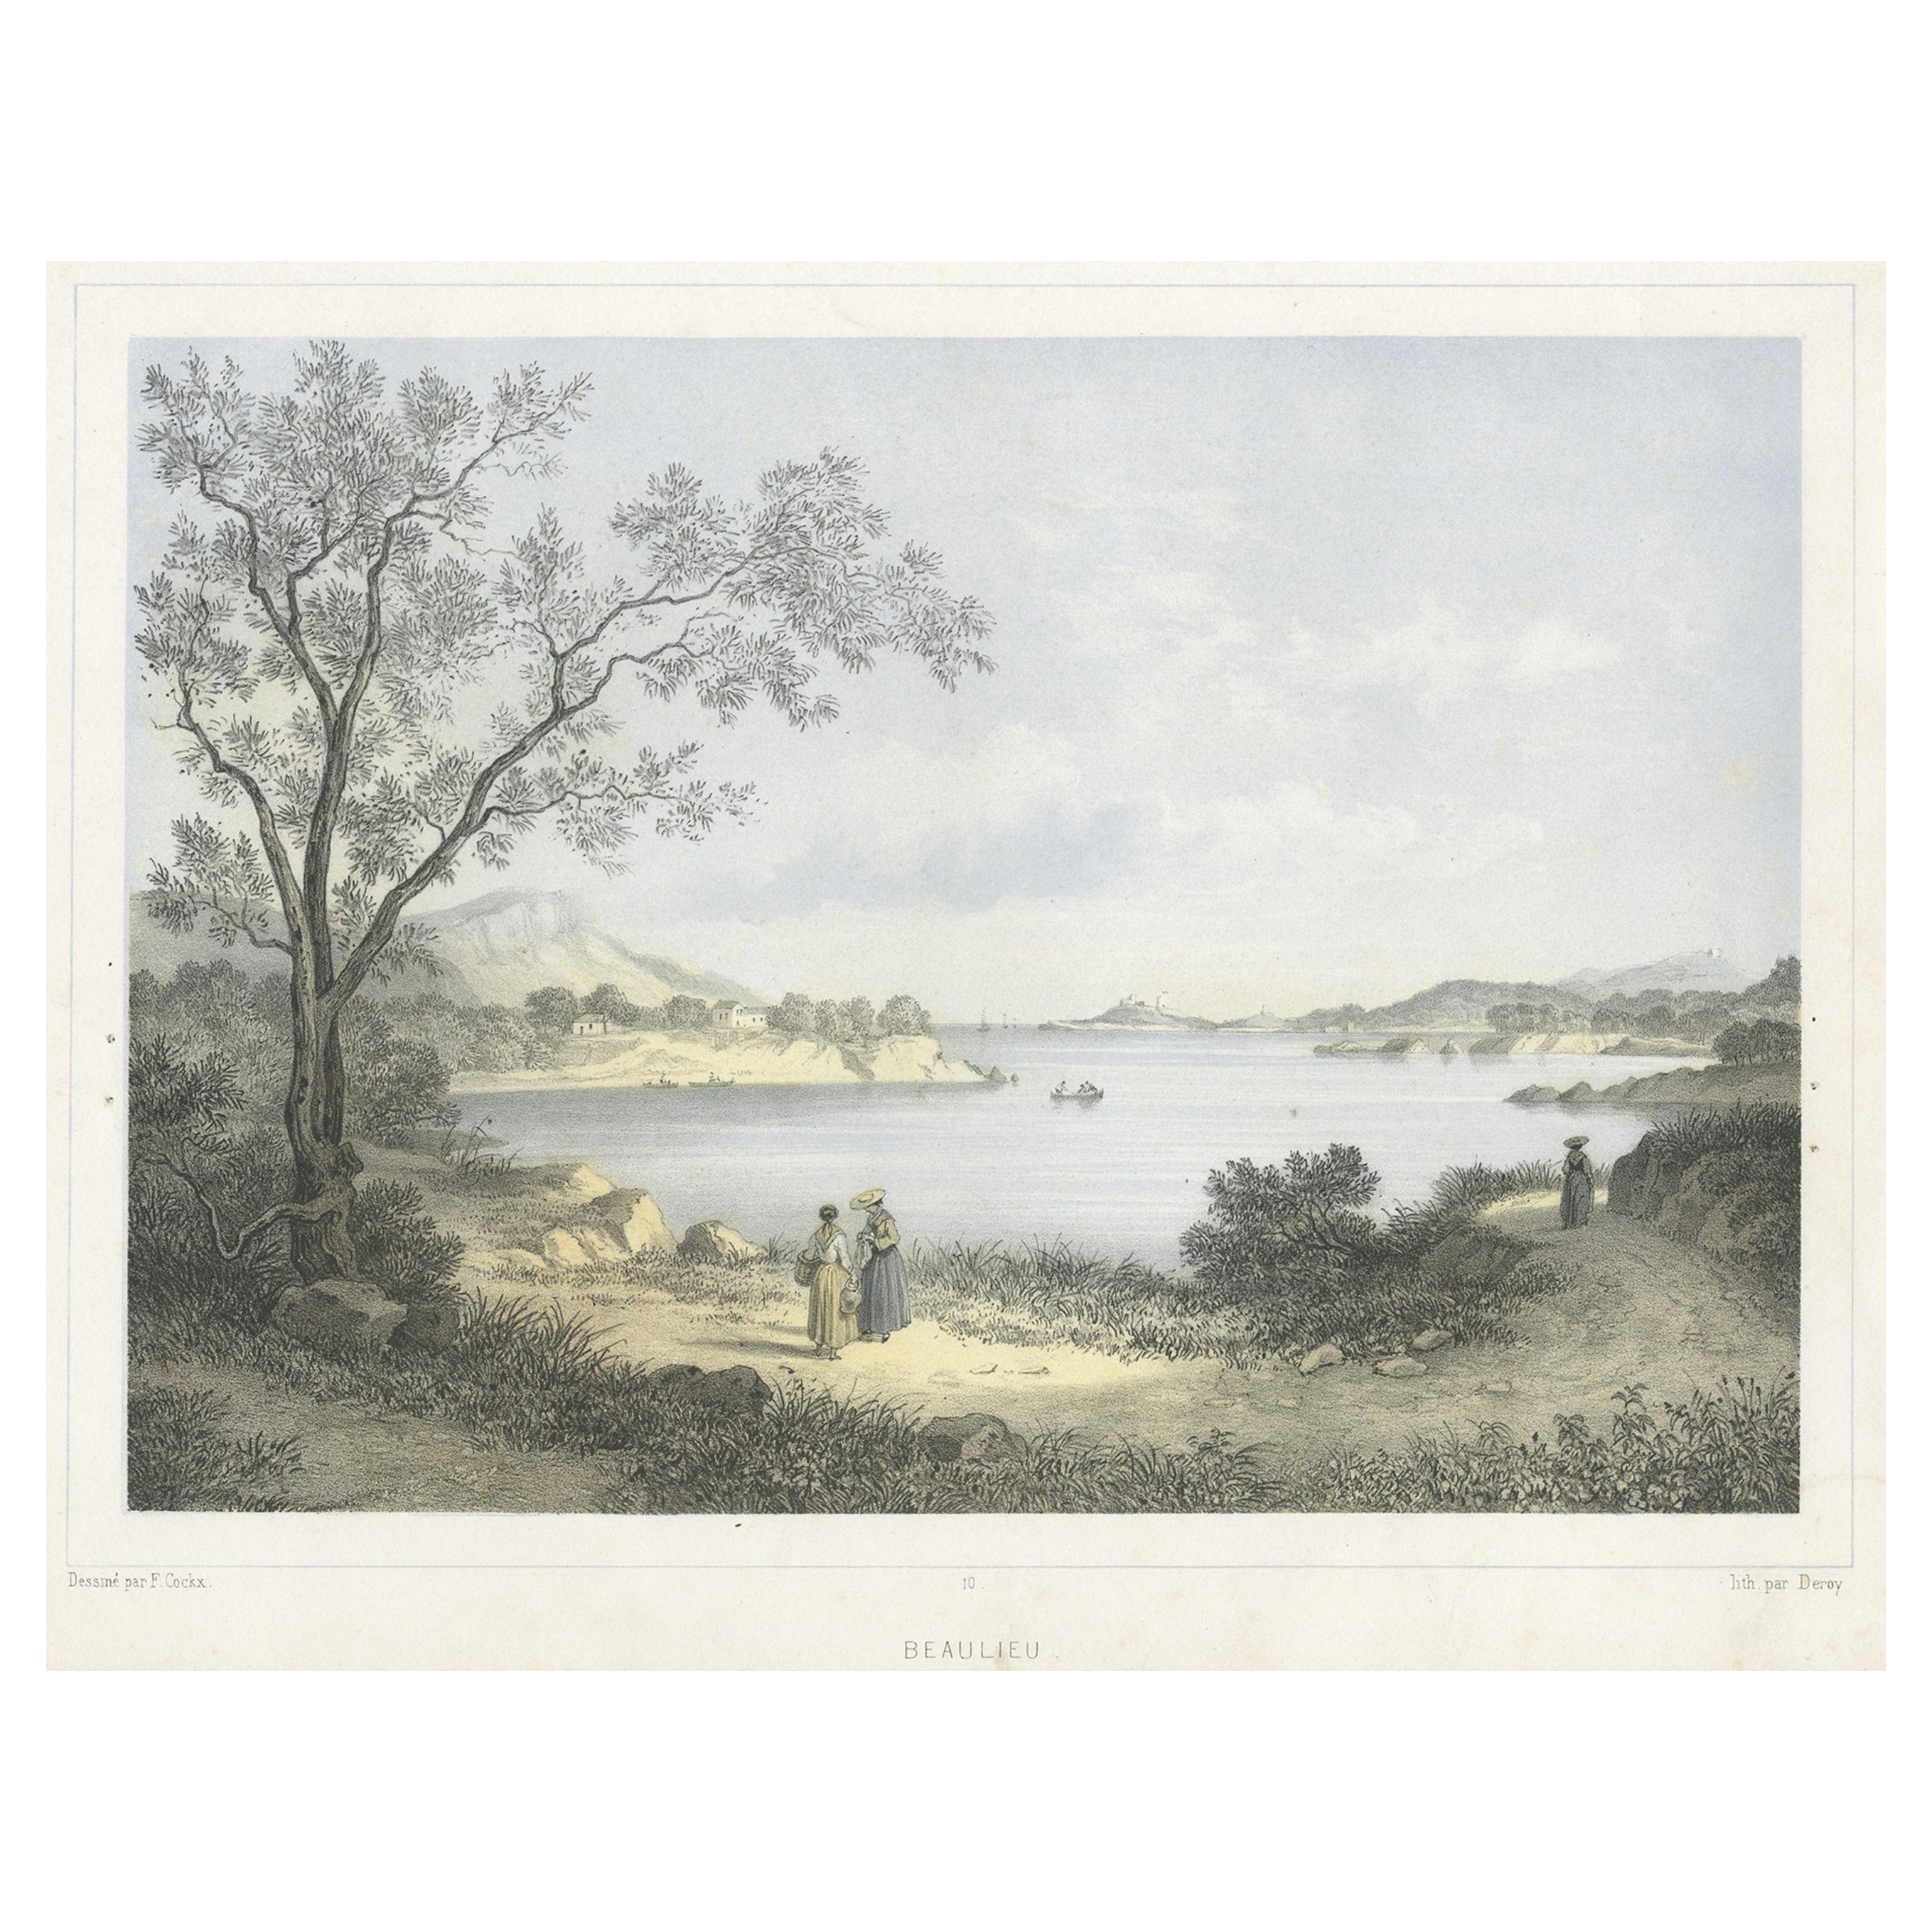 Druck von Beaulieu-sur-mer, an der französischen Riviera zwischen Nizza und Monaco, um 1850